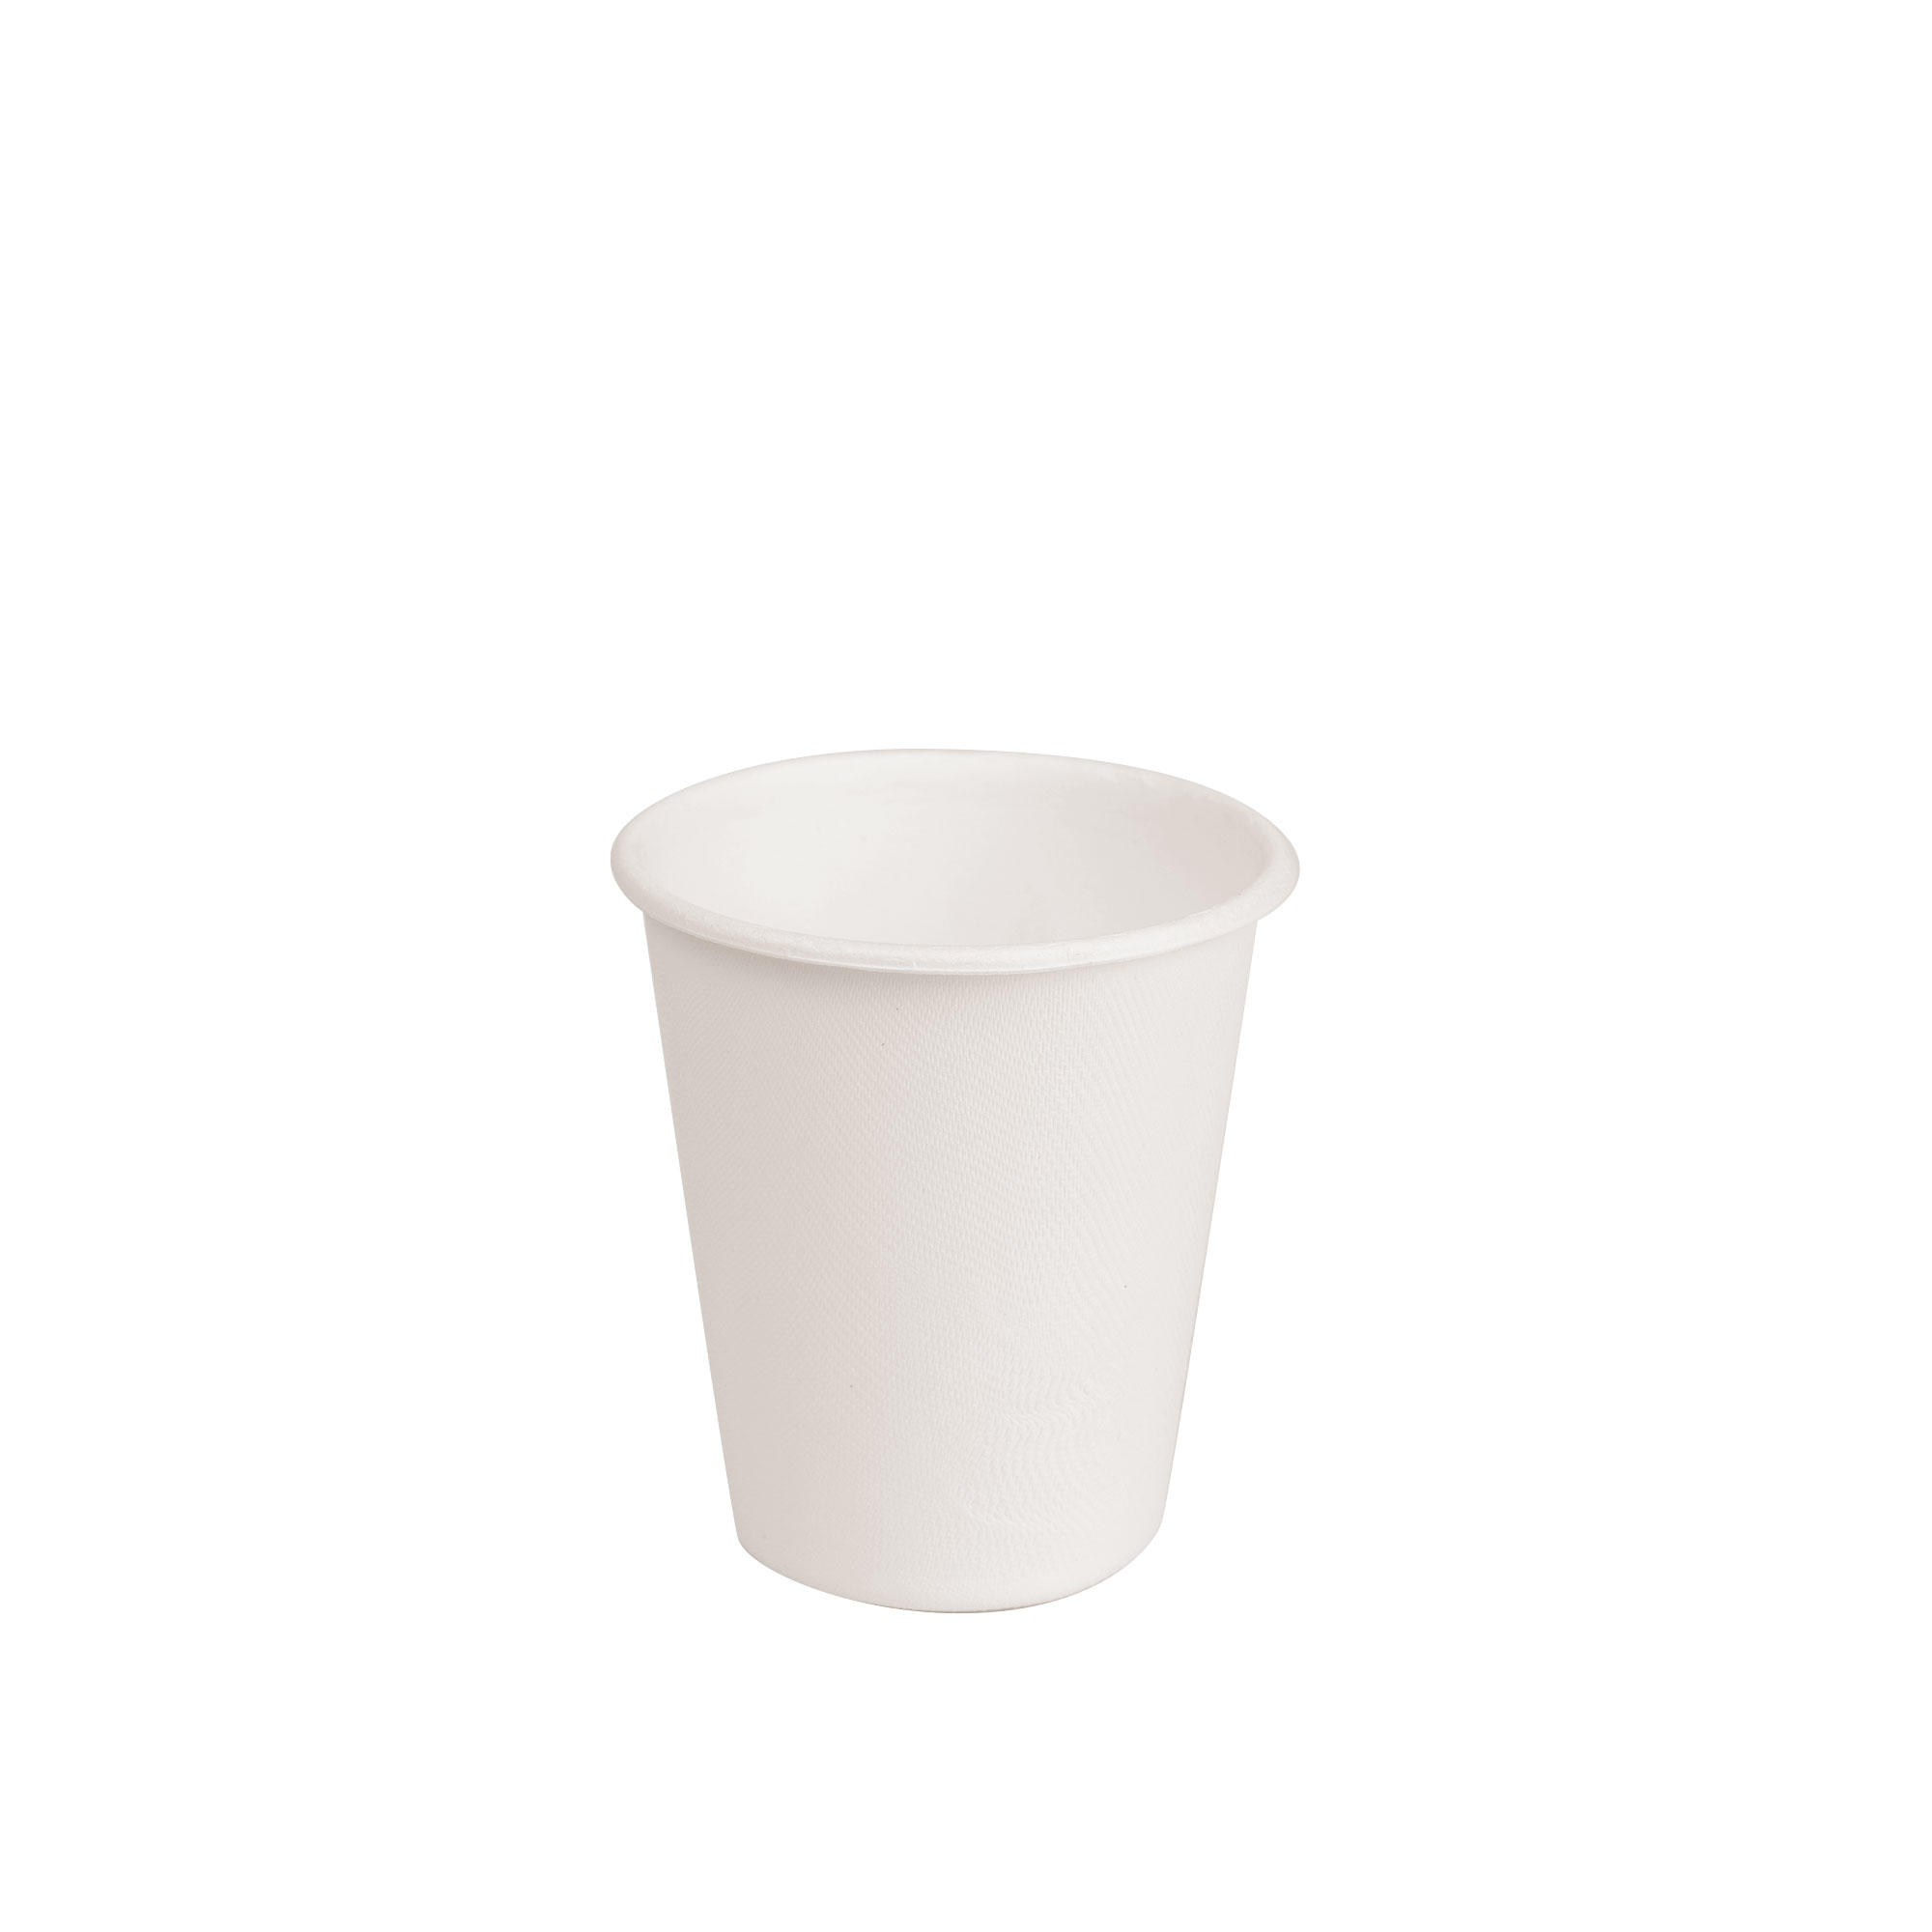  Plant fiber paper cups